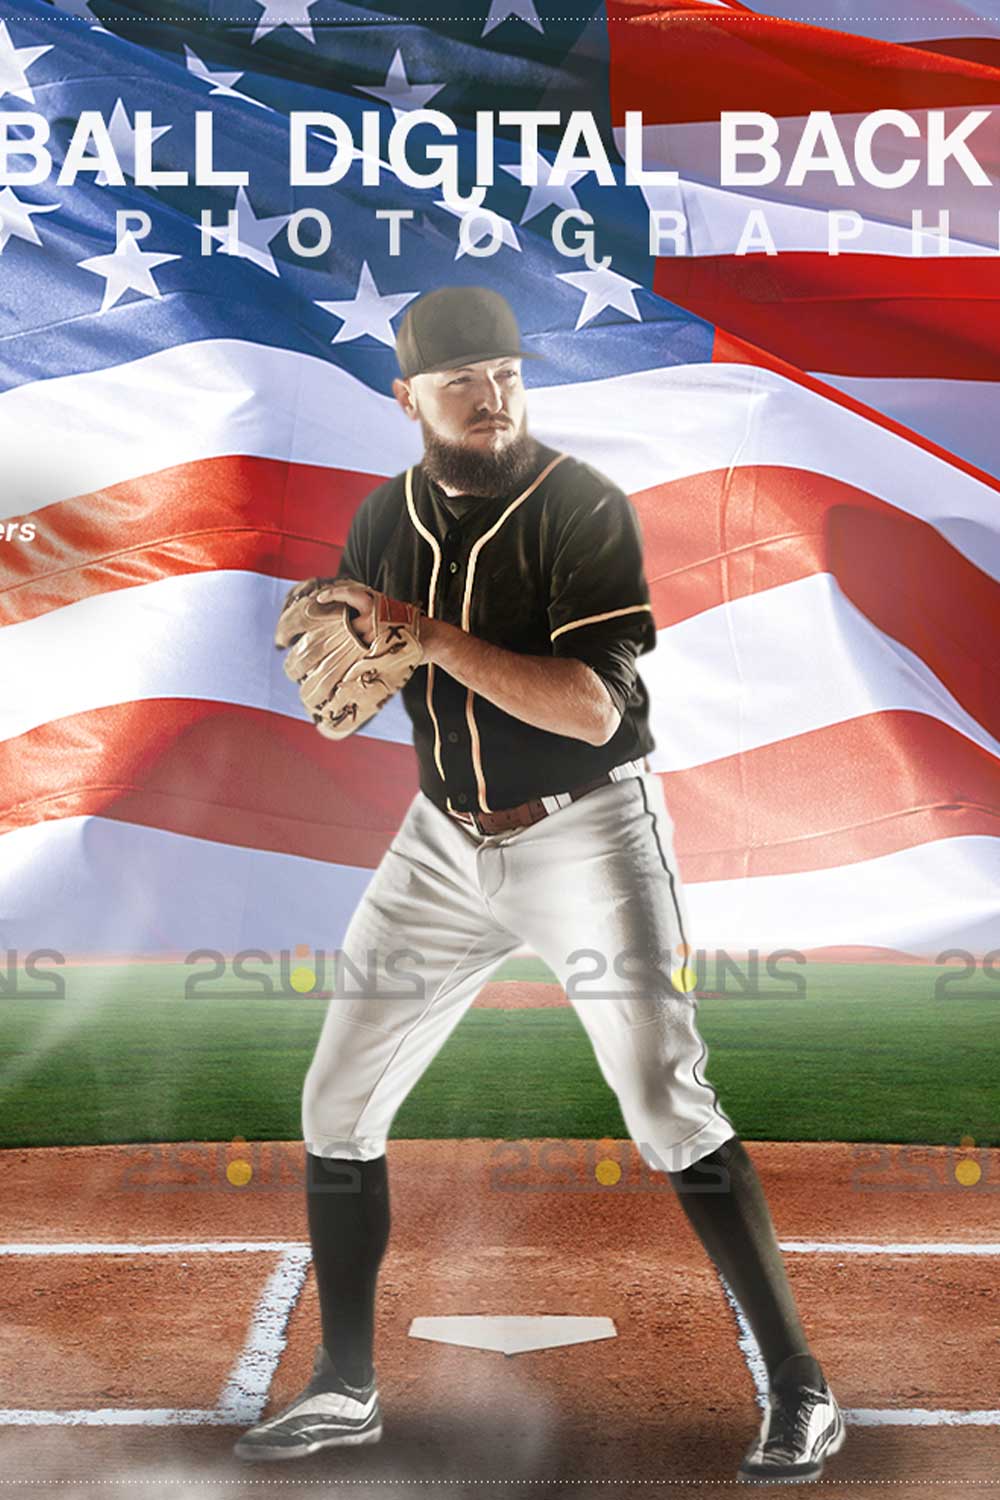 Baseball USA Flag Backdrop Sports Digital Photo Background Pinterest Image.